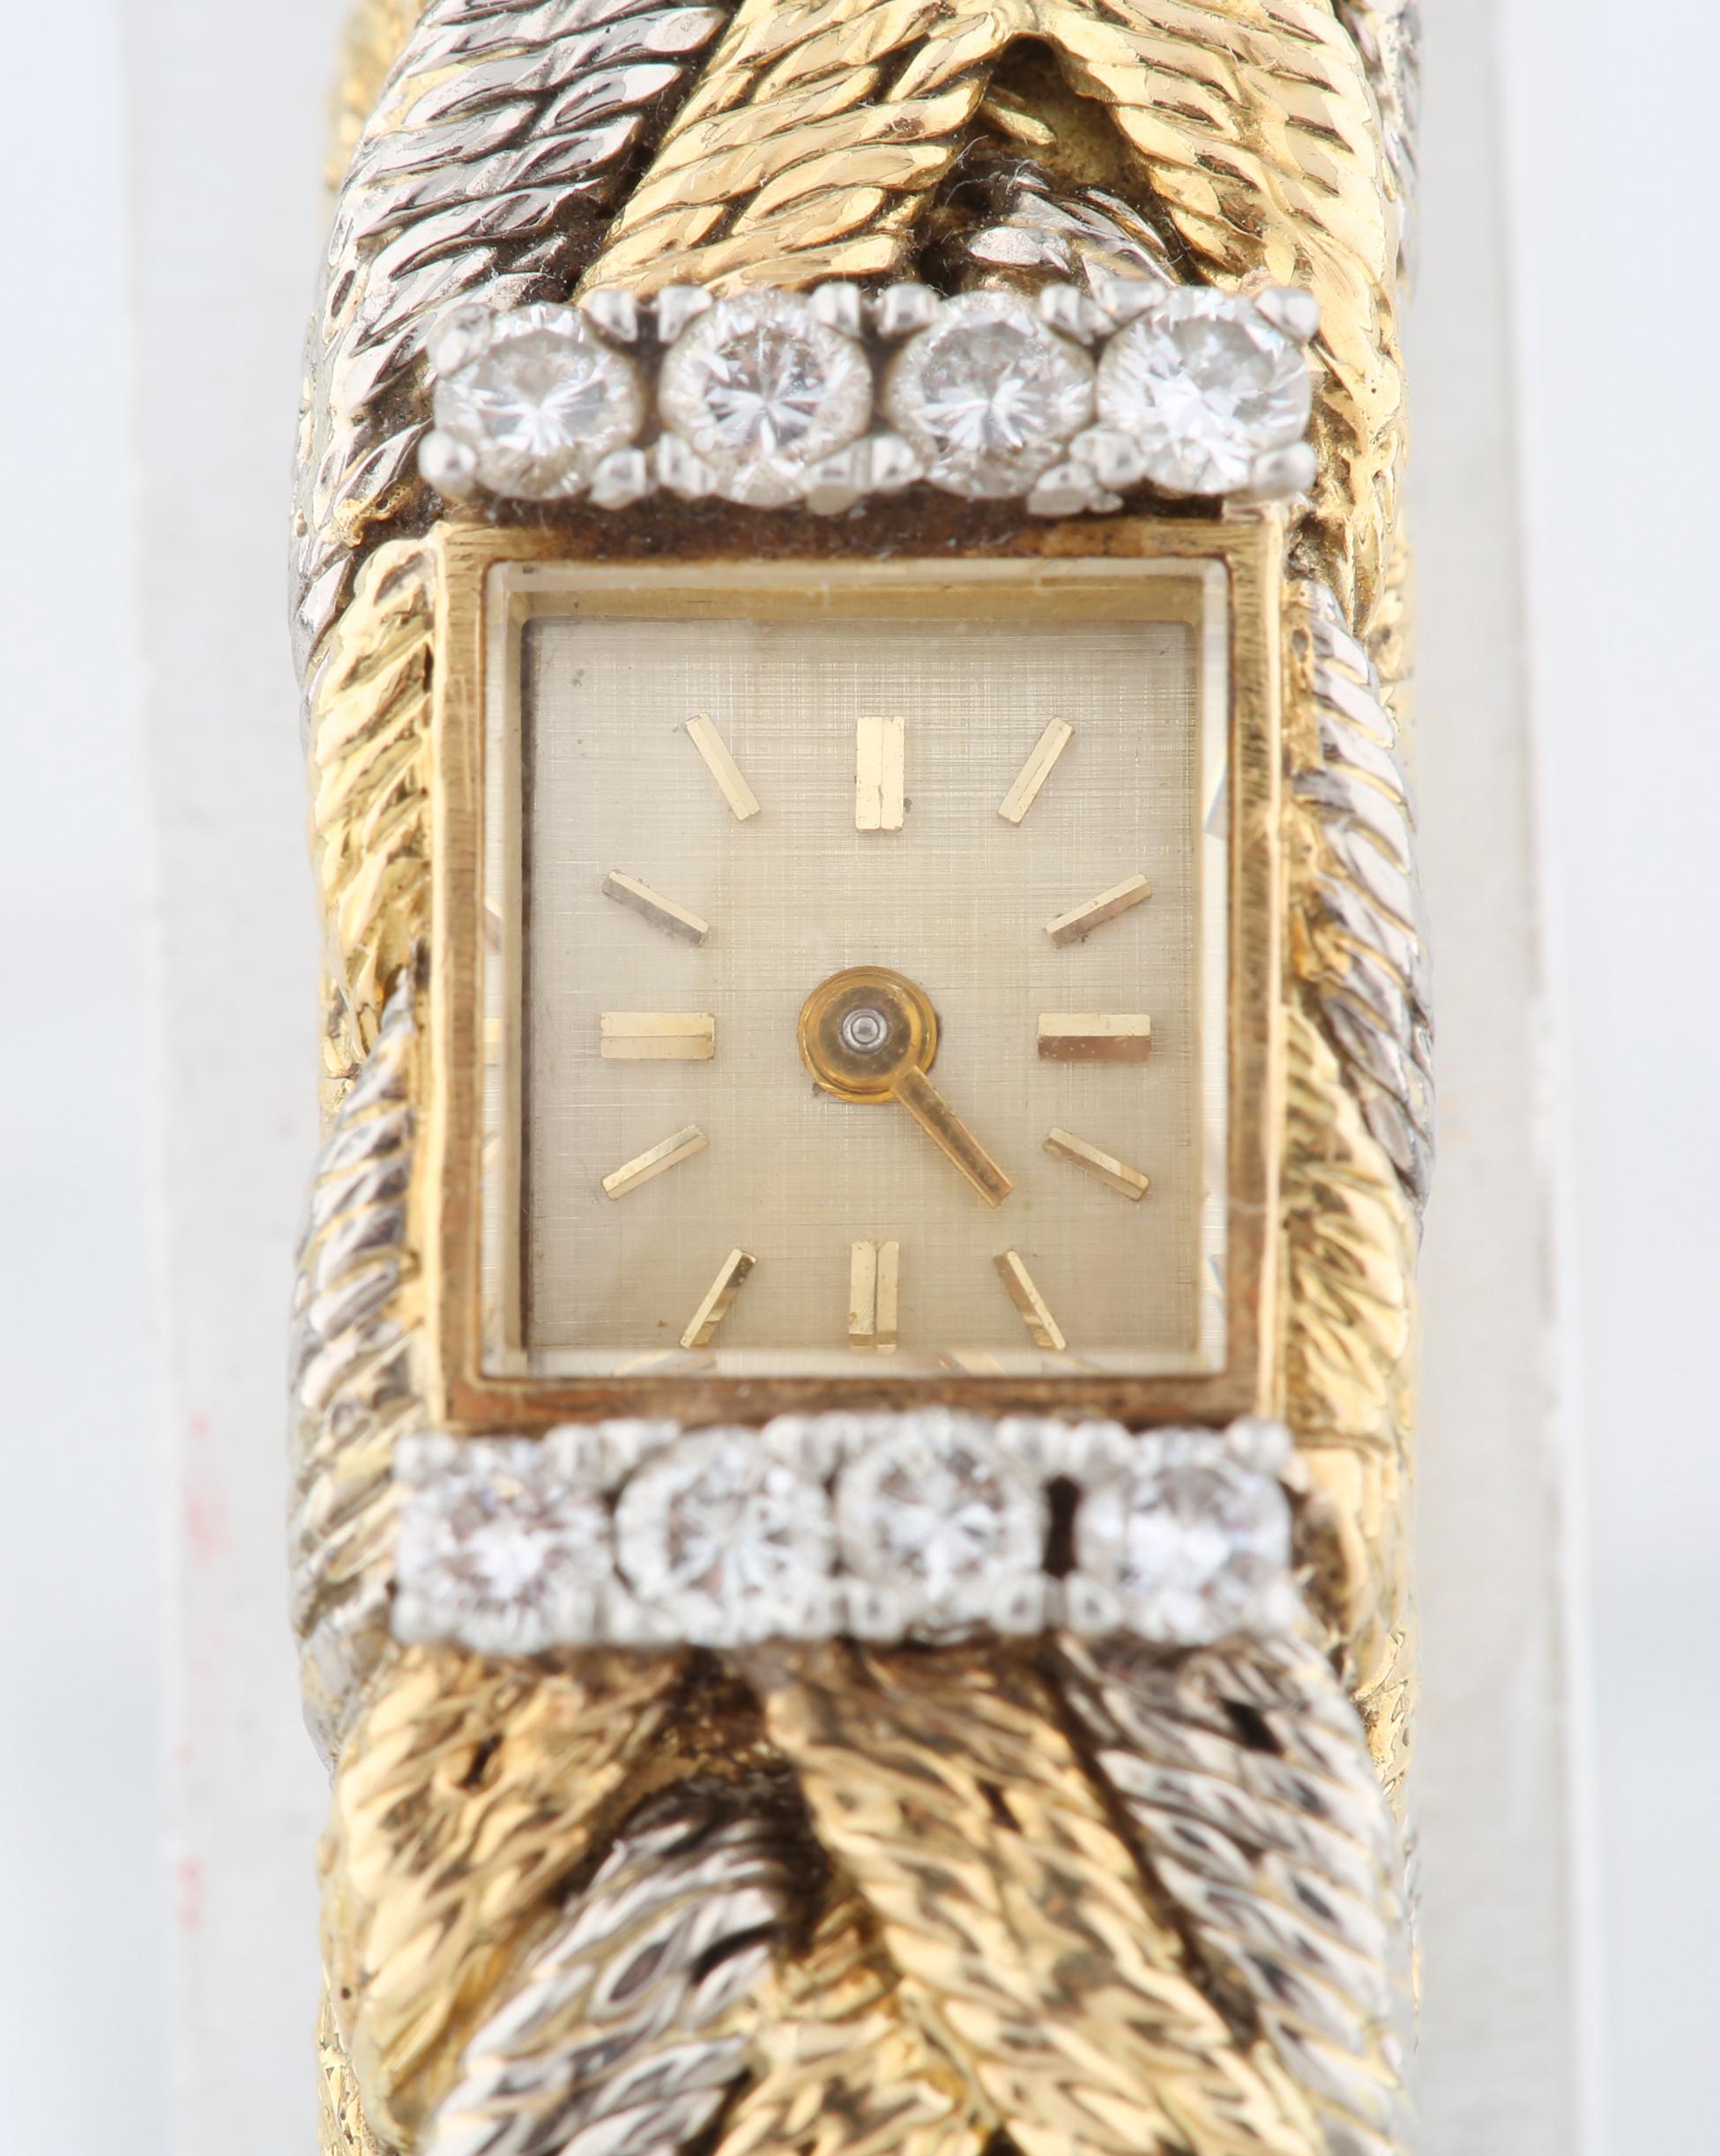 Wunderschönes Armband aus Gold und Platin mit gedrehtem Geflecht und Blancpain-Uhr, mit Diamanten verziert
Hergestellt in Frankreich
Voraussichtliches Herstellungsdatum: 1920's
Metall: 18k Gelbgold und Platin
Edelsteine: 8 Diamanten über und unter